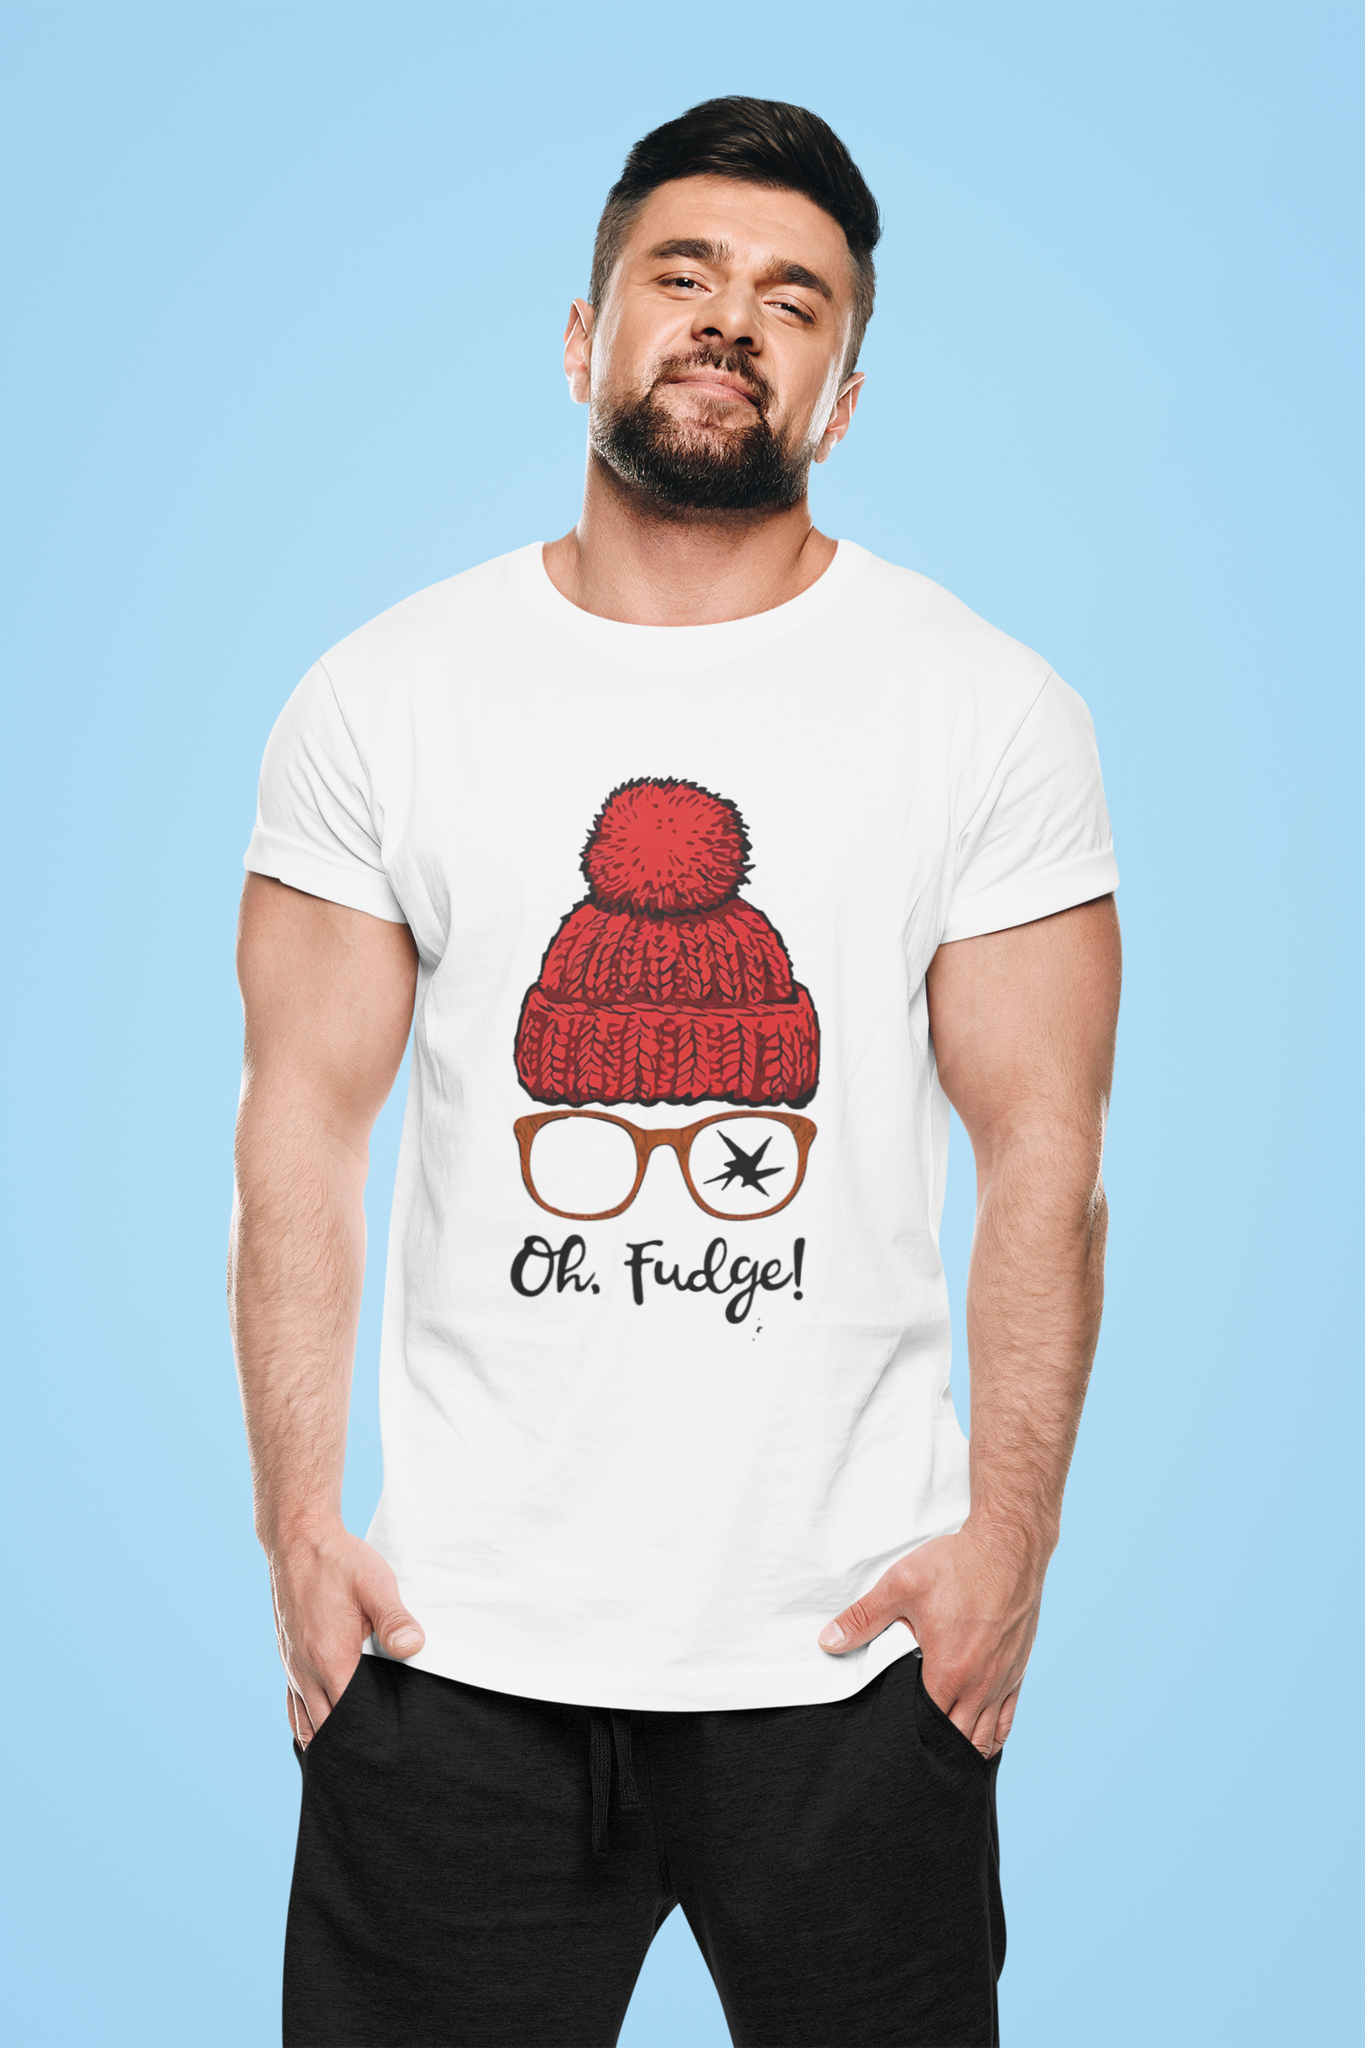 A Christmas Story T Shirt, Ralphie Tshirt, Oh Fudge T Shirt